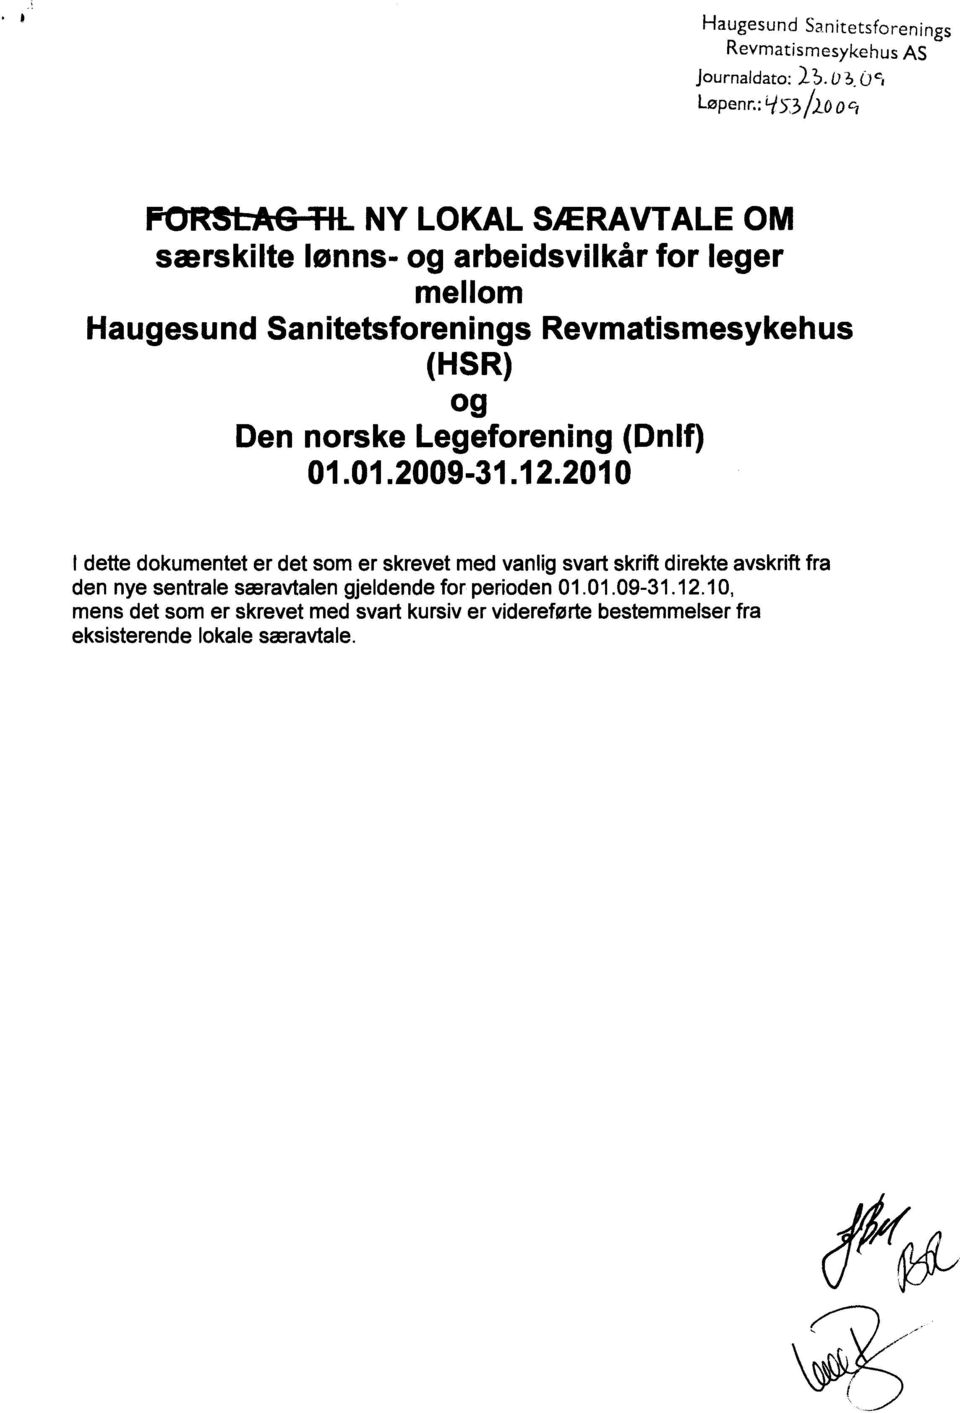 Revmatismesykehus (HSR) og Den norske Legeforening (Dnlf) 01.01.2009-31.12.